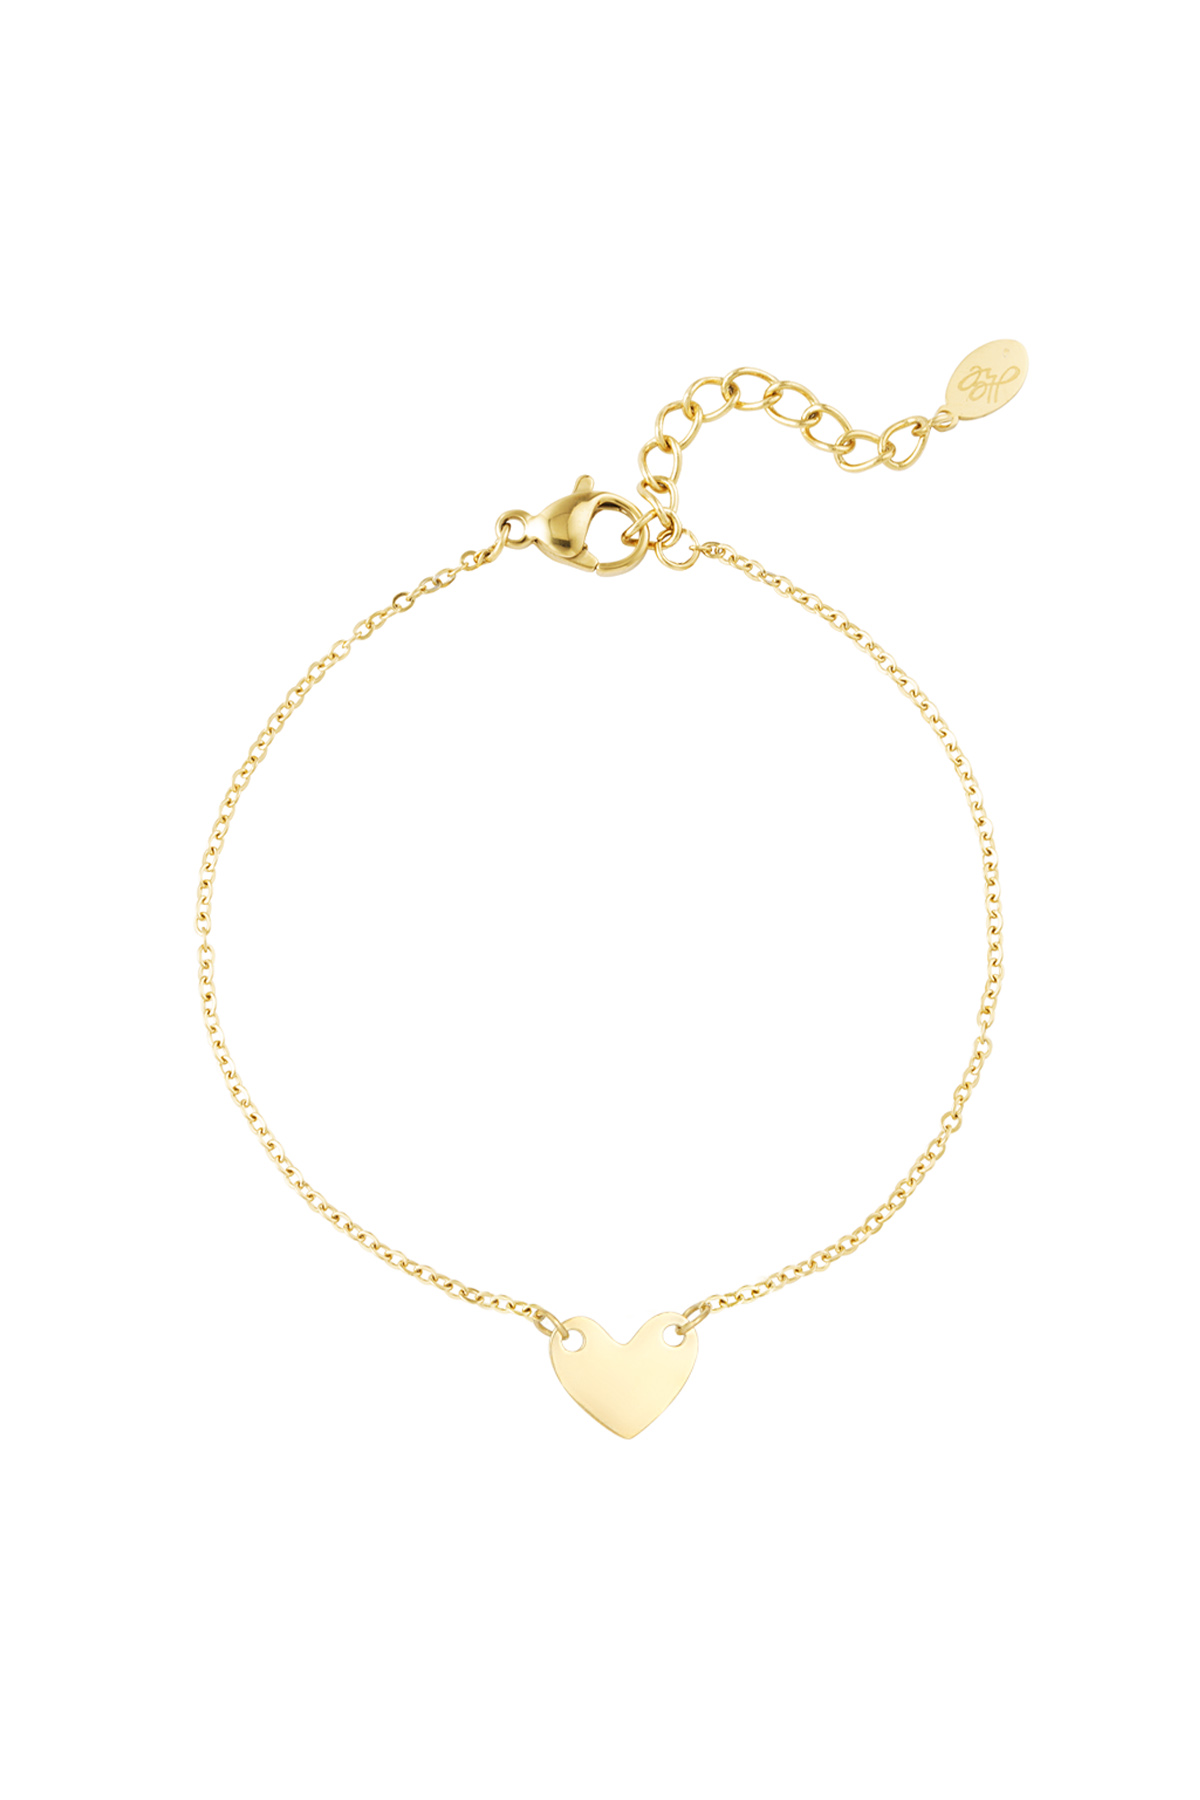 Bracelet enduring affection - gold h5 Picture3